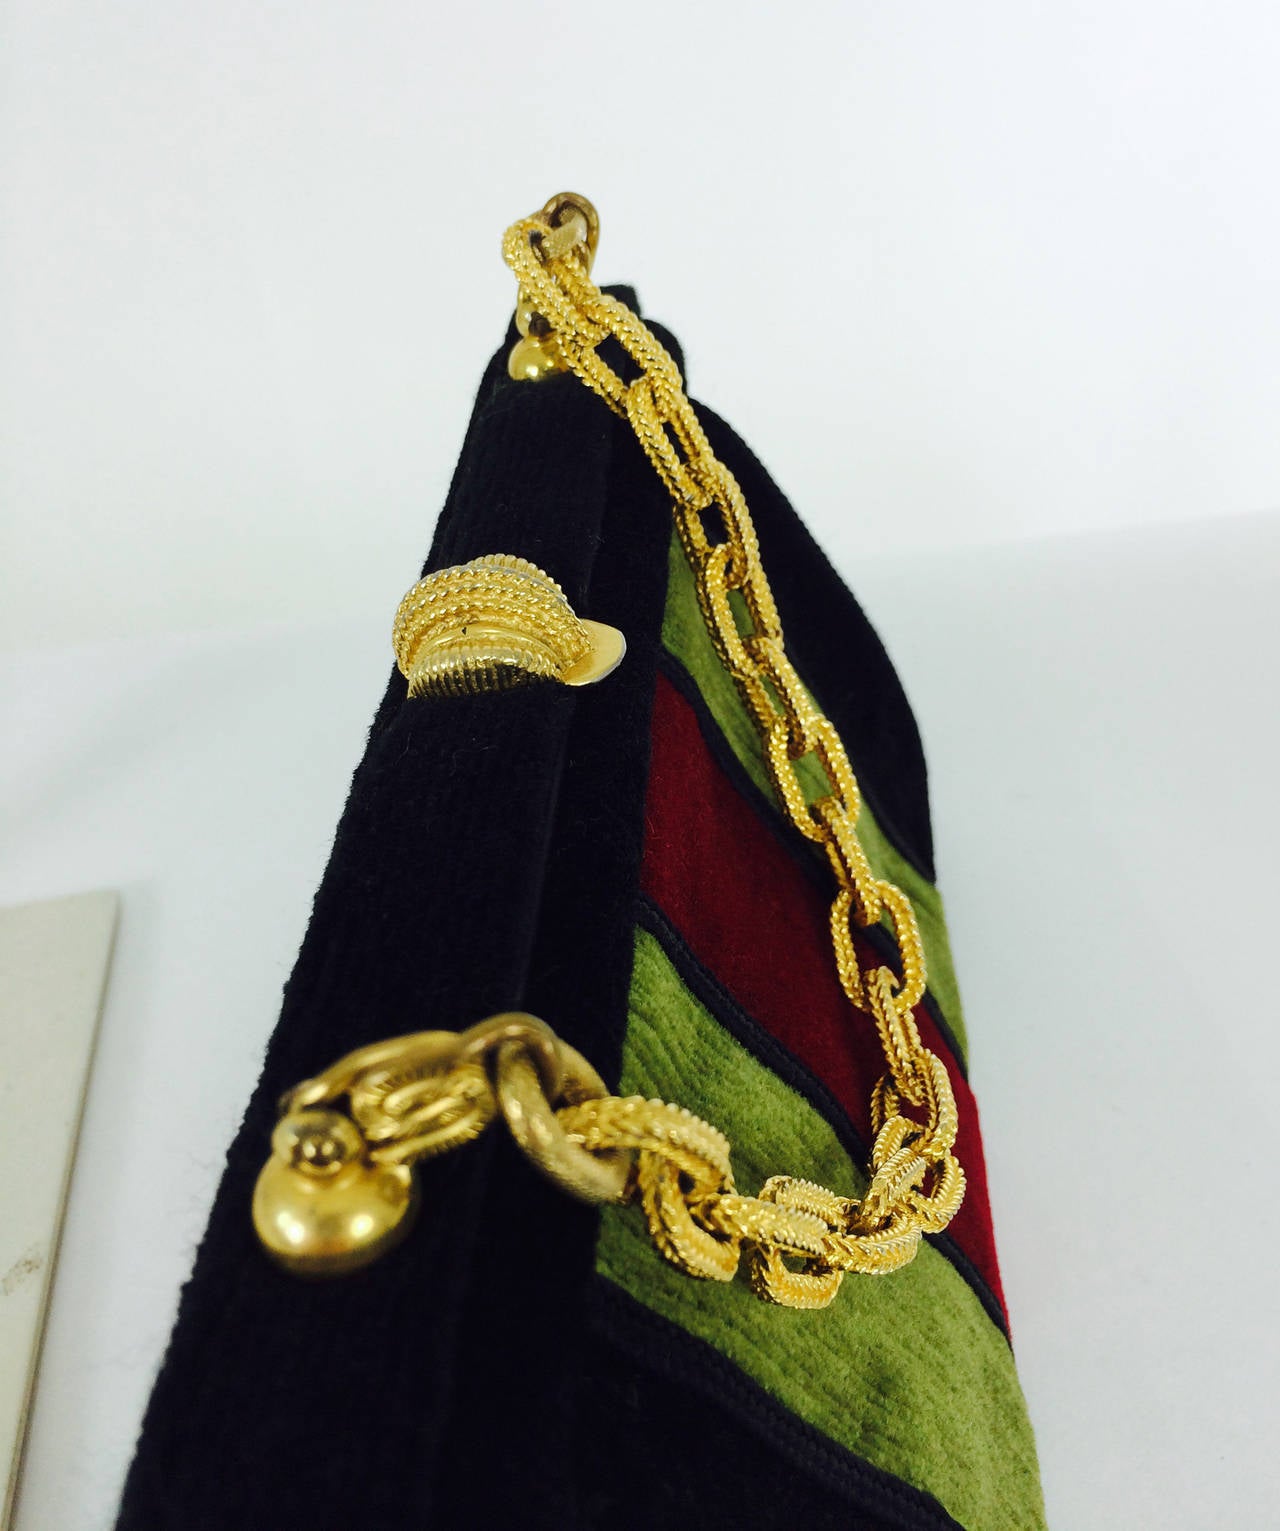 Women's Velvet chain handle bag in red, black & green 1970s